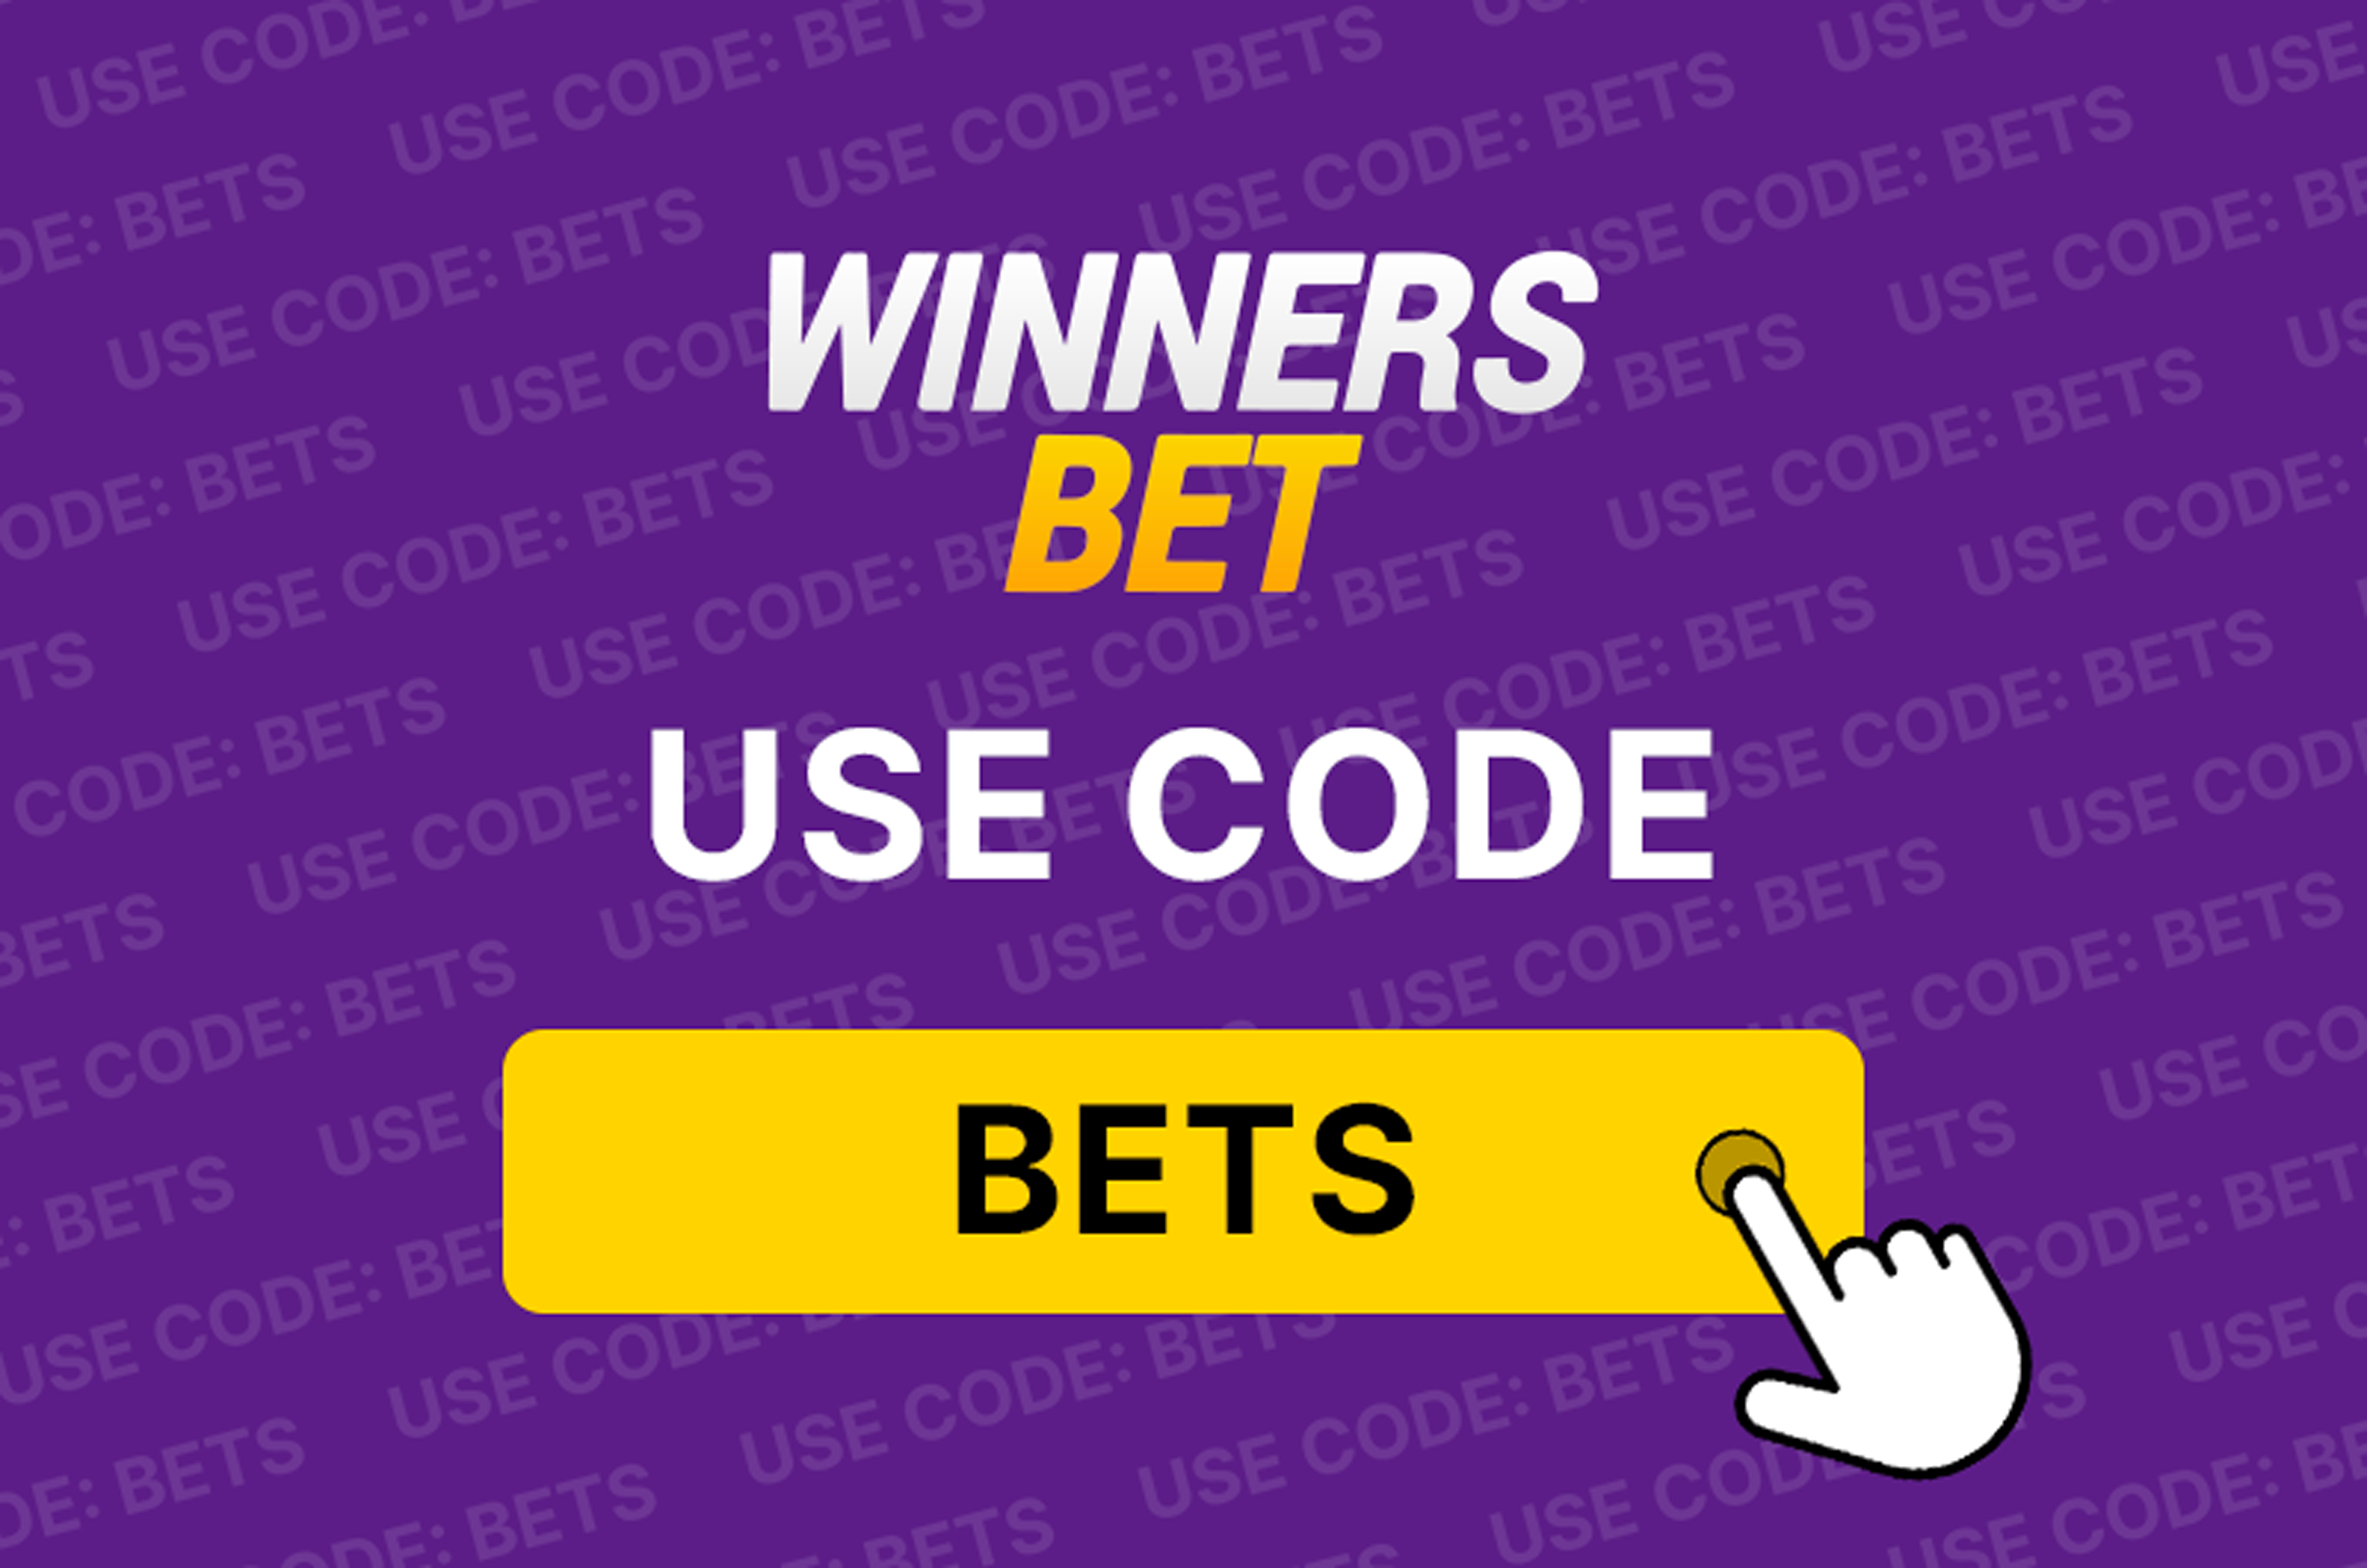 winnersbet-code-bets